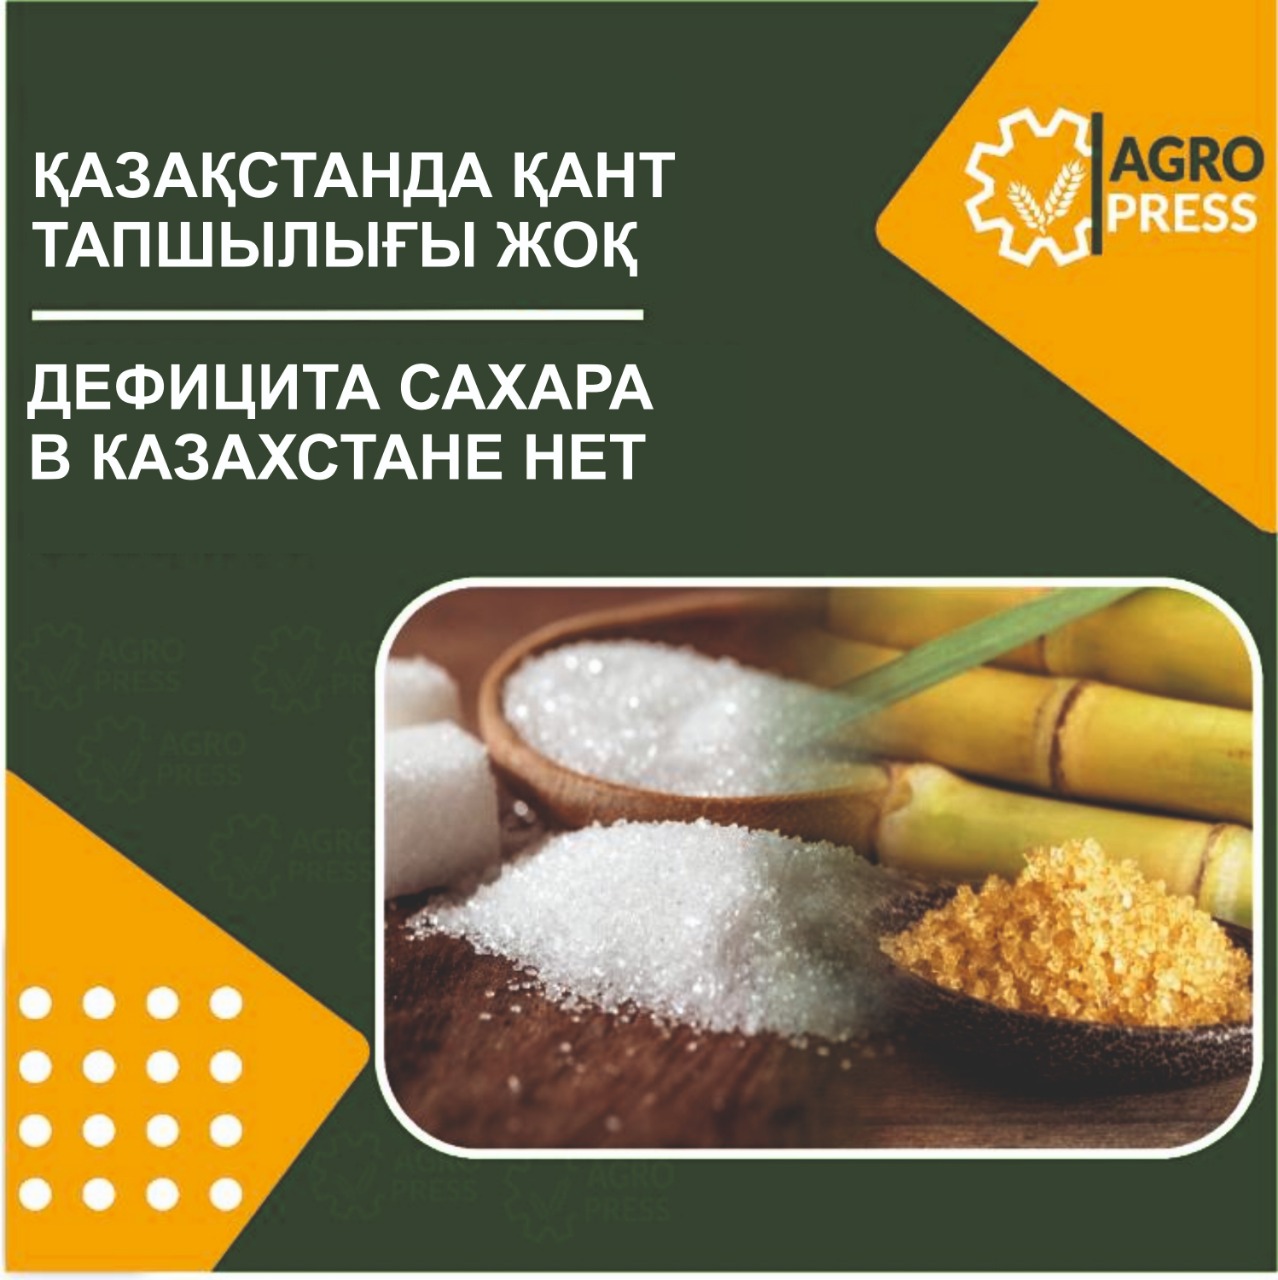 Дефицита сахара в Казахстане нет